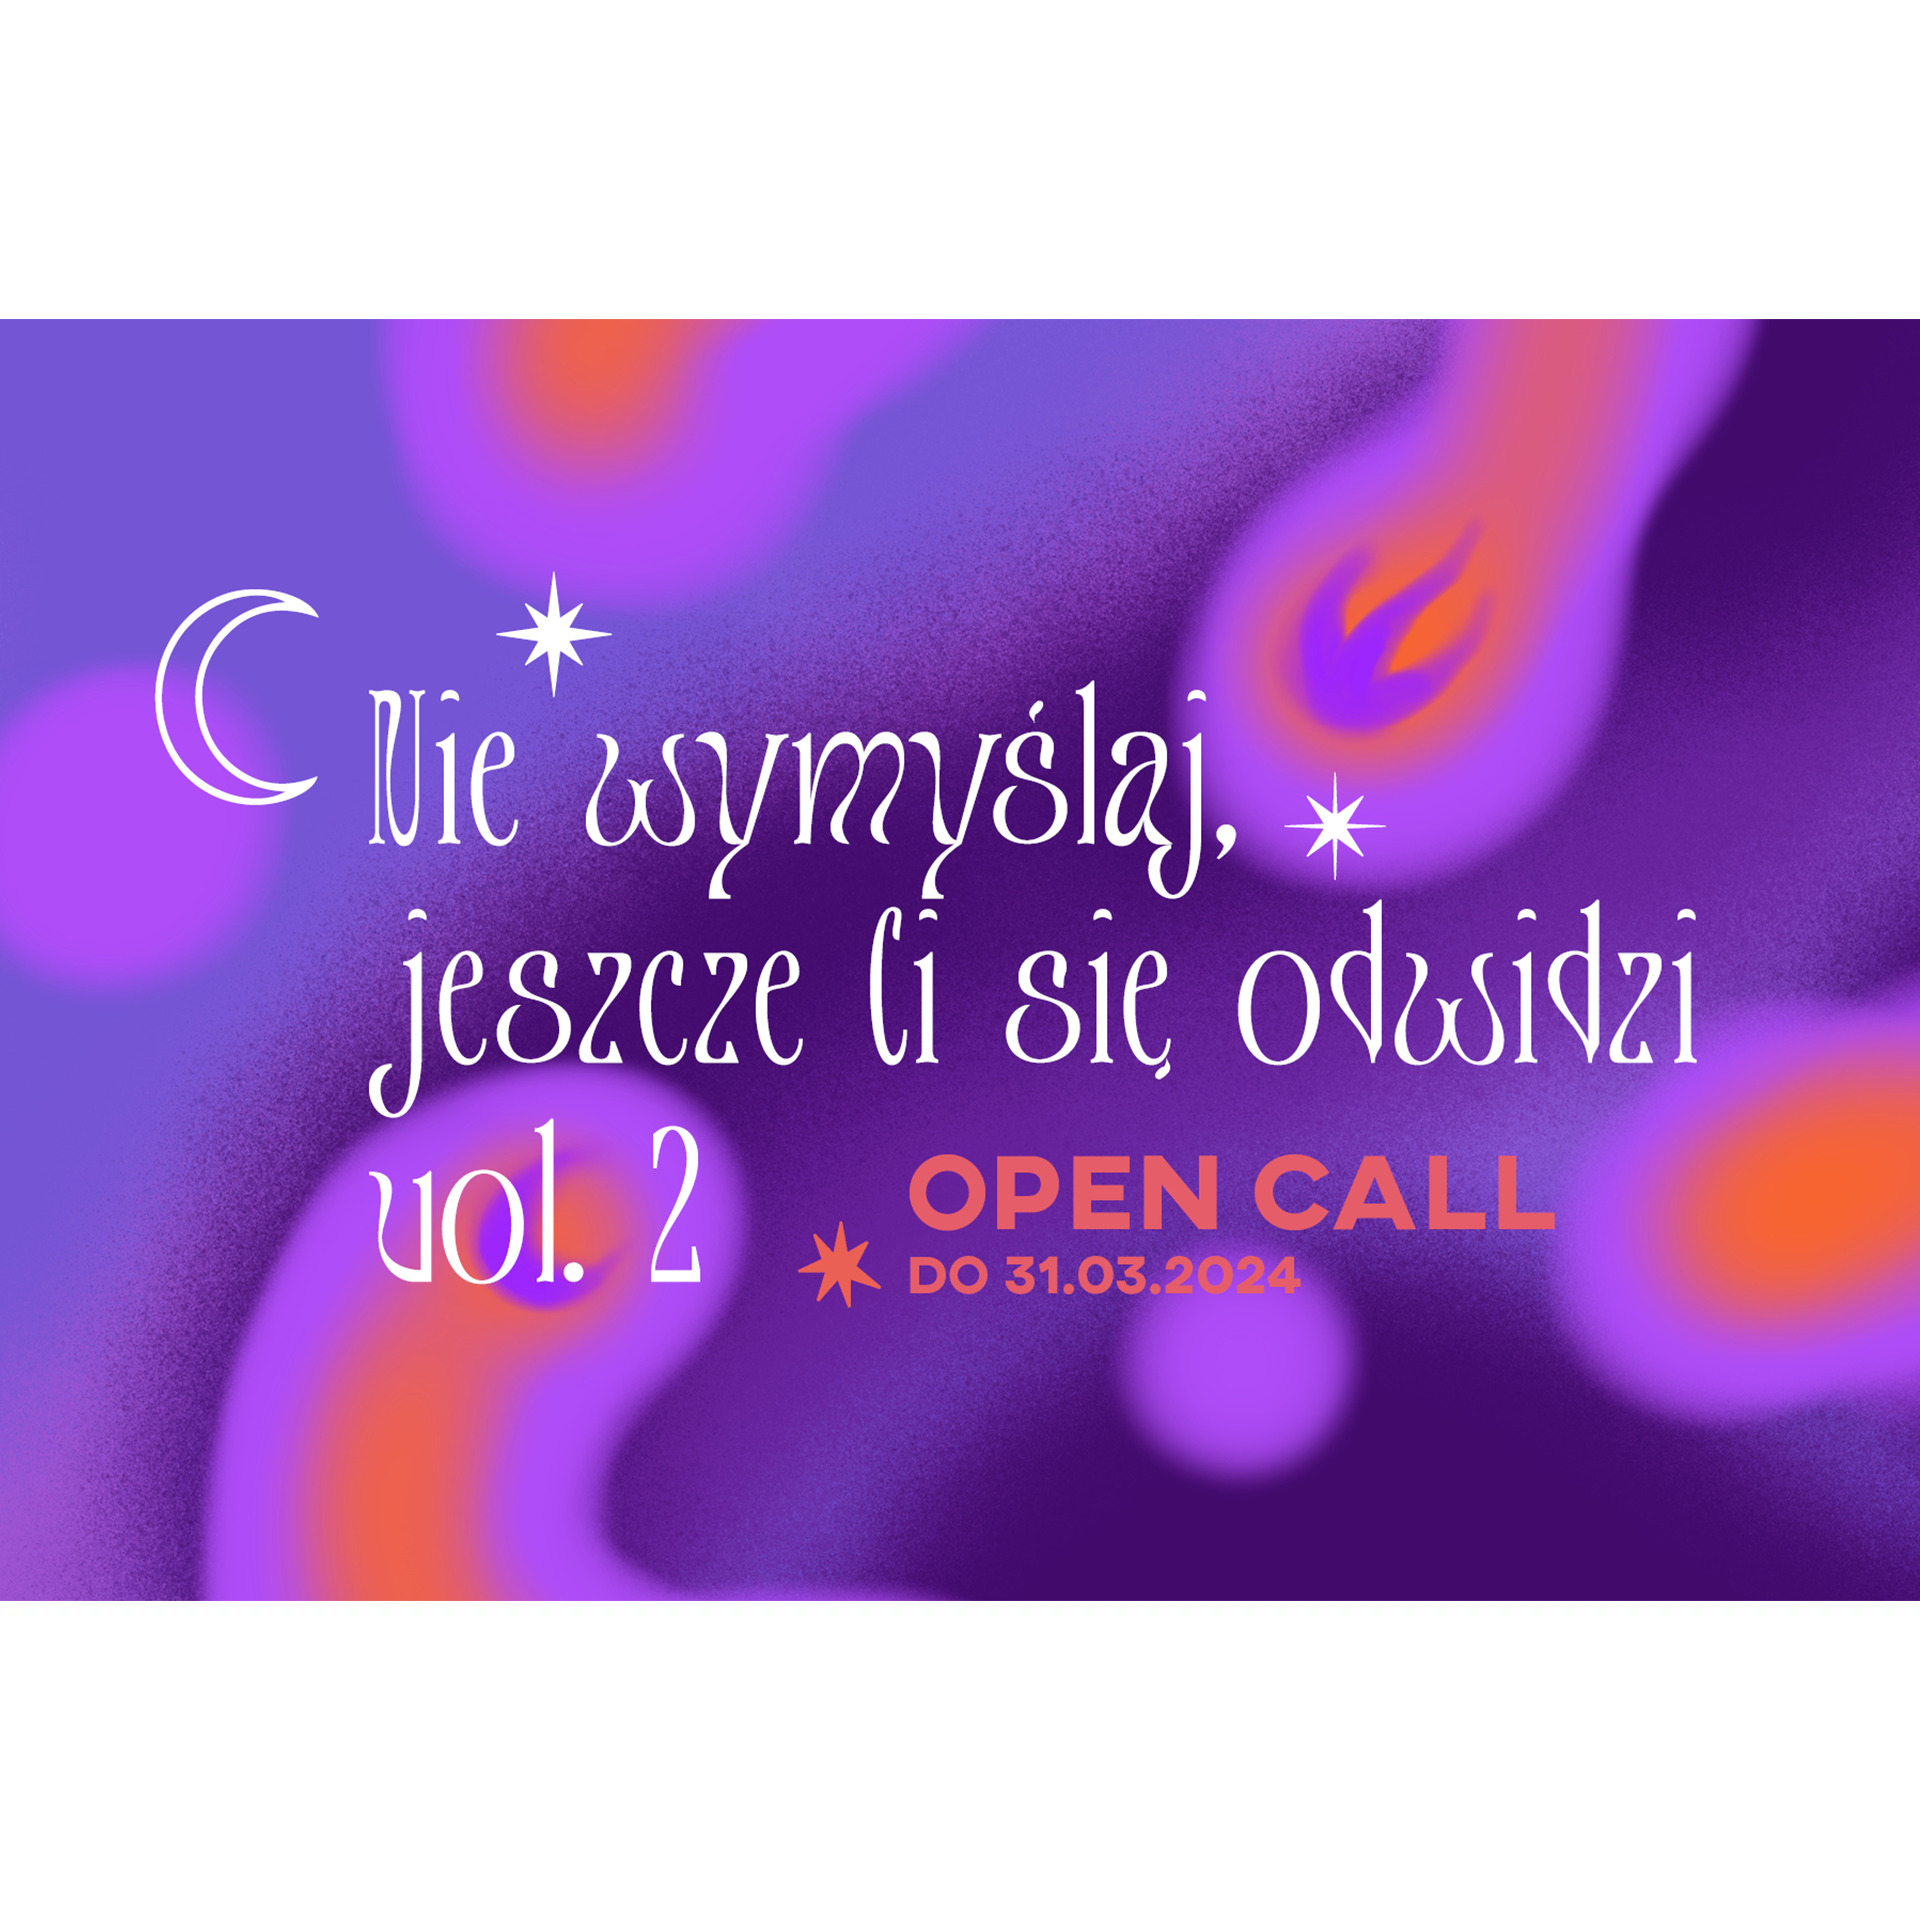 Nie wymyślaj, jeszcze Ci się odwidzi vol. 2 – open call